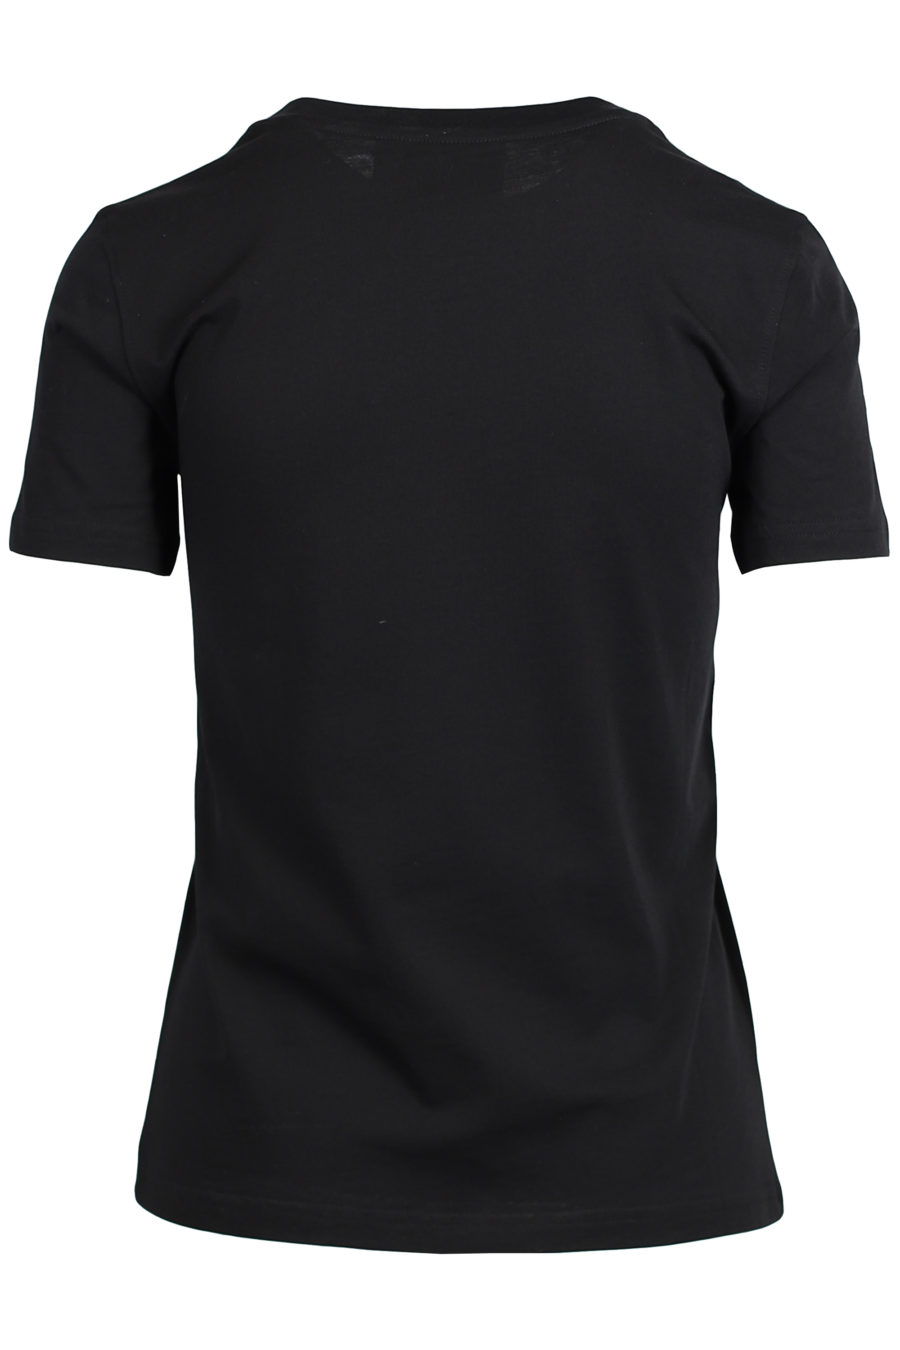 Camiseta negra de manga corta "Couture" - IMG 2053